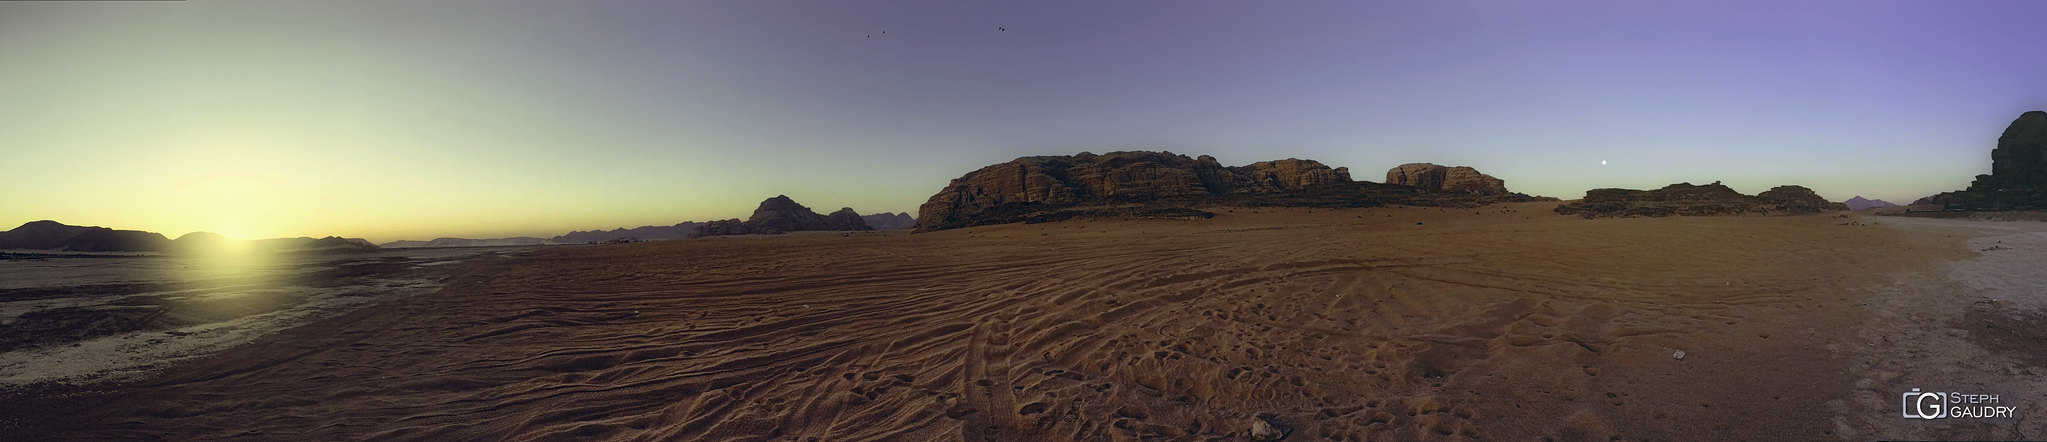 Wadi-Rum panorama gsm [Click to start slideshow]